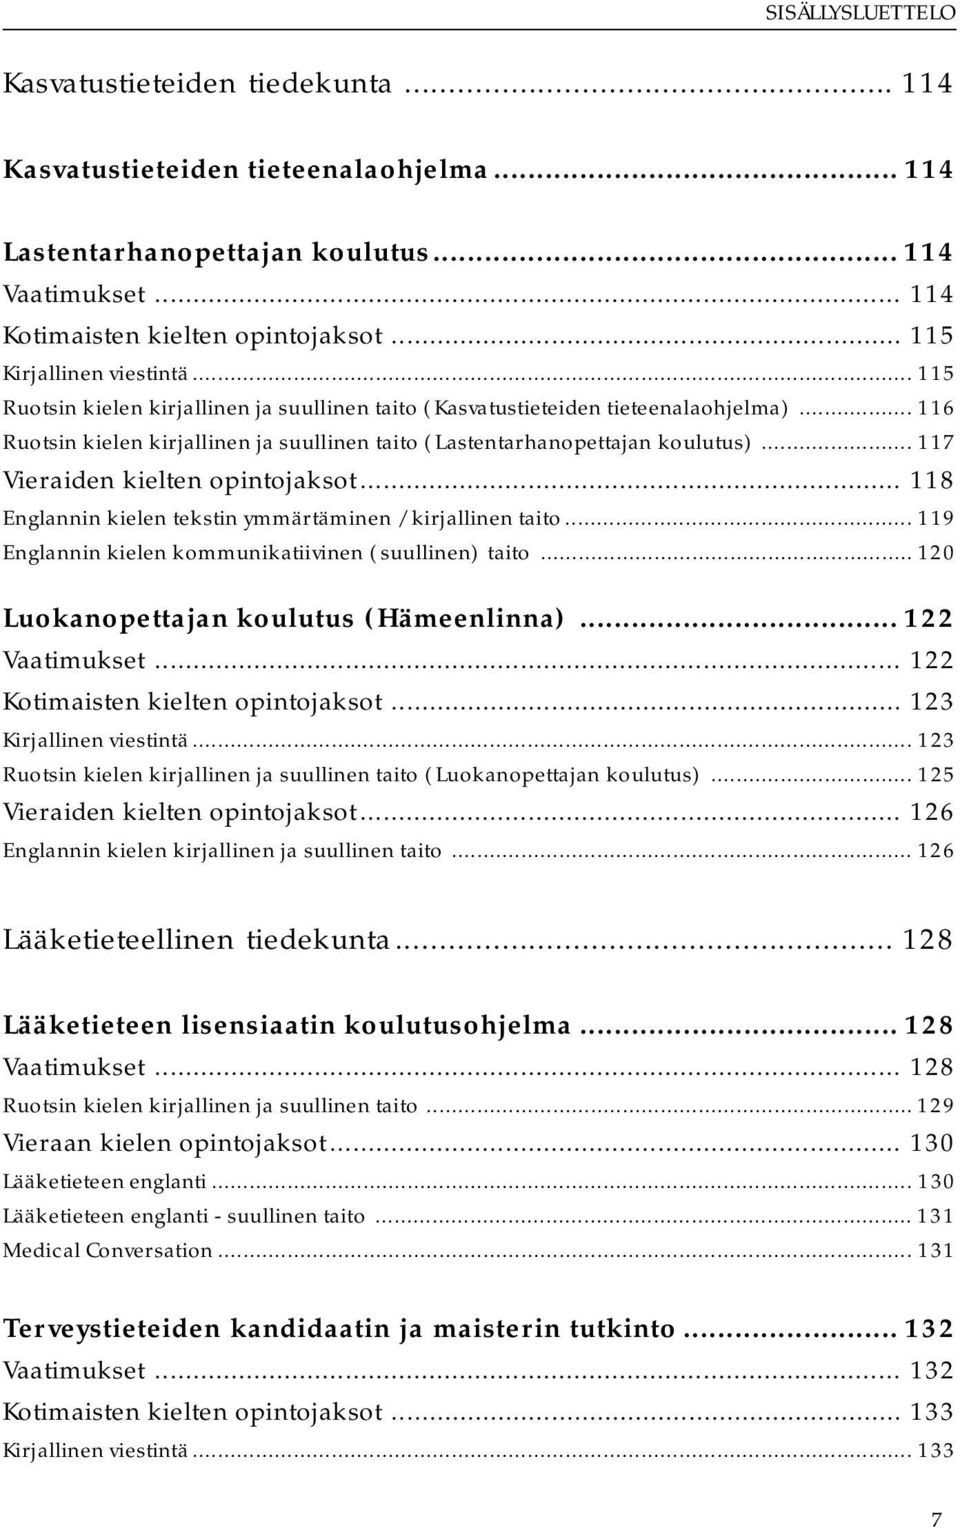 .. 116 Ruotsin kielen kirjallinen ja suullinen taito (Lastentarhanopettajan koulutus)... 117 Vieraiden kielten opintojaksot... 118 Englannin kielen tekstin ymmärtäminen / kirjallinen taito.